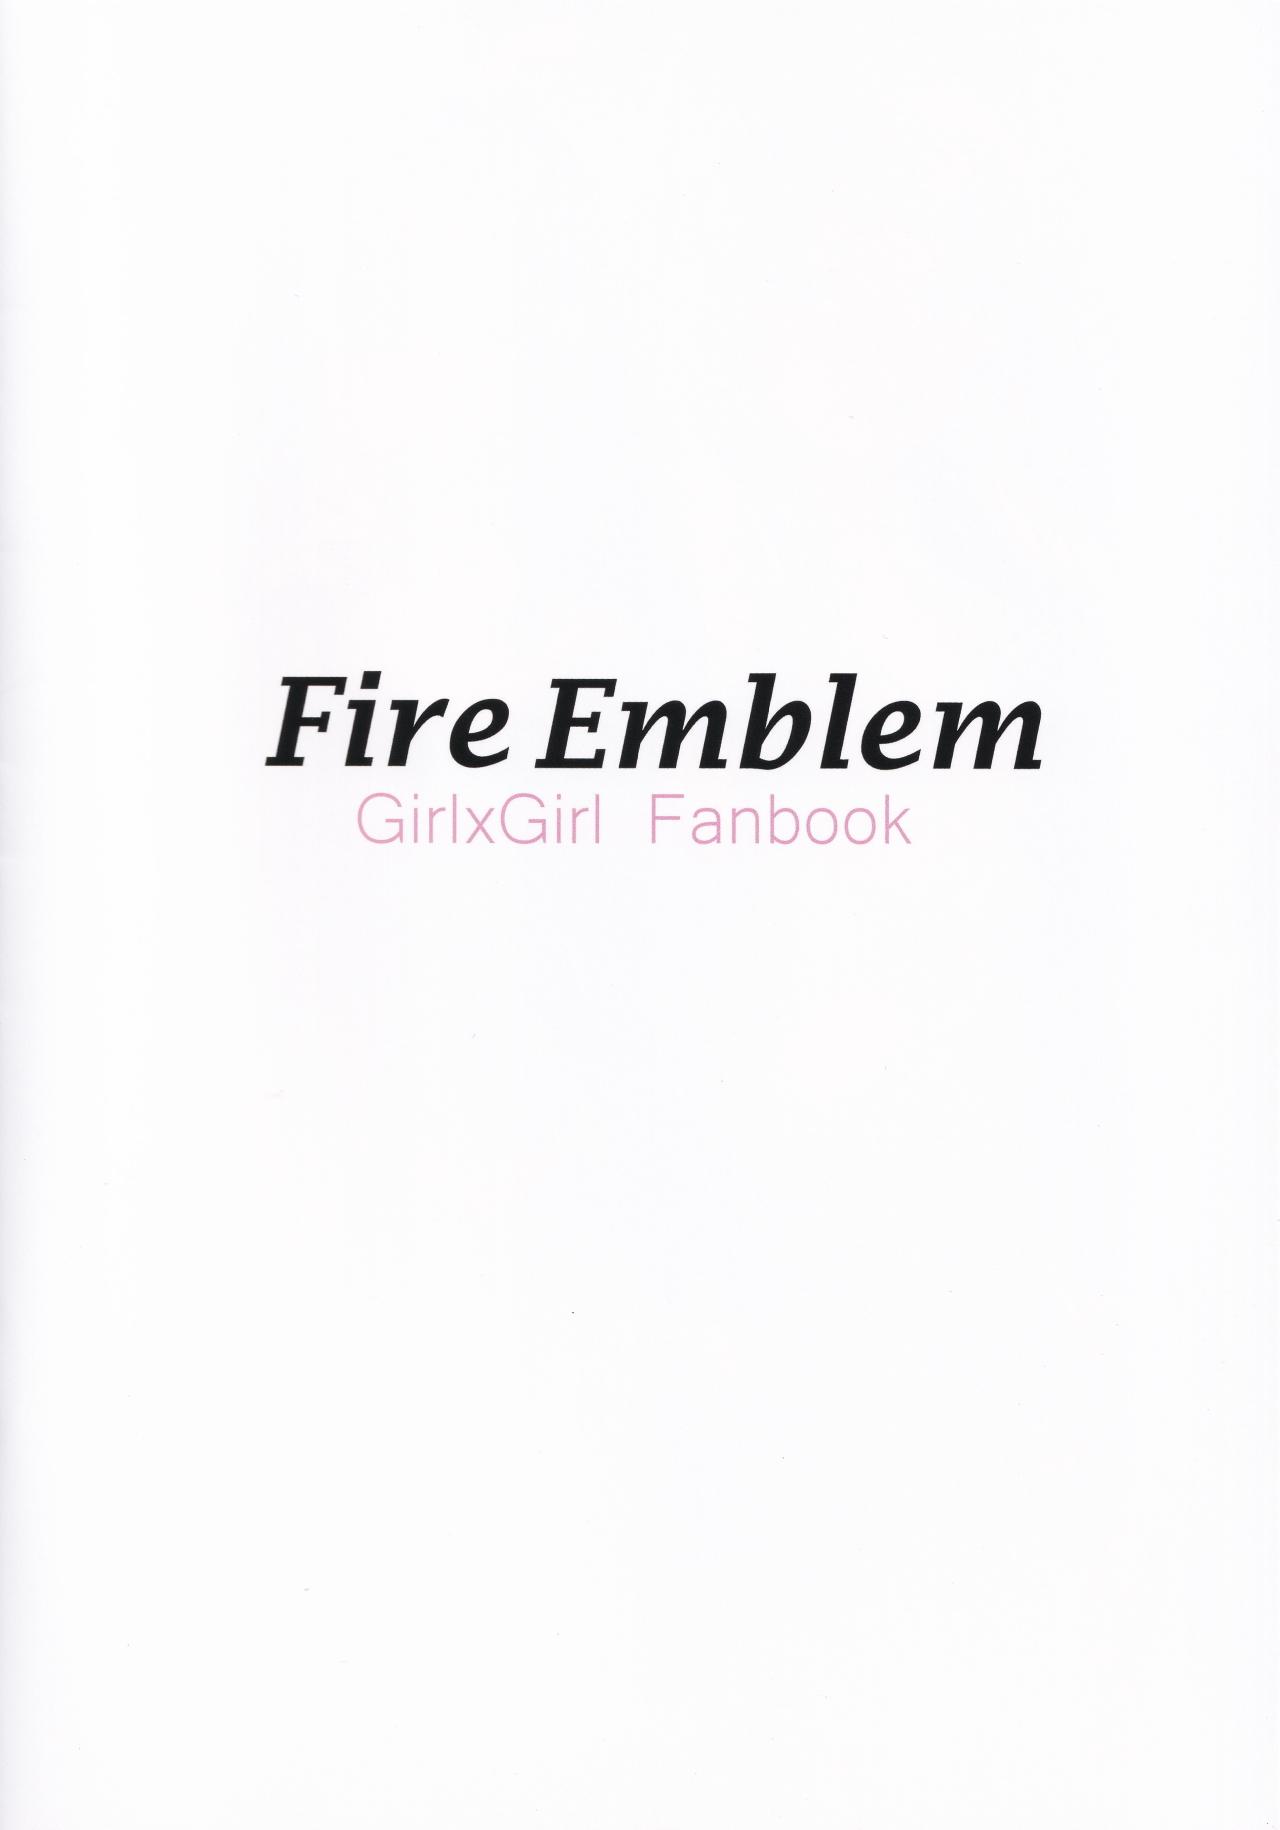 Fire Emblem Girl x Girl Fanbook 1